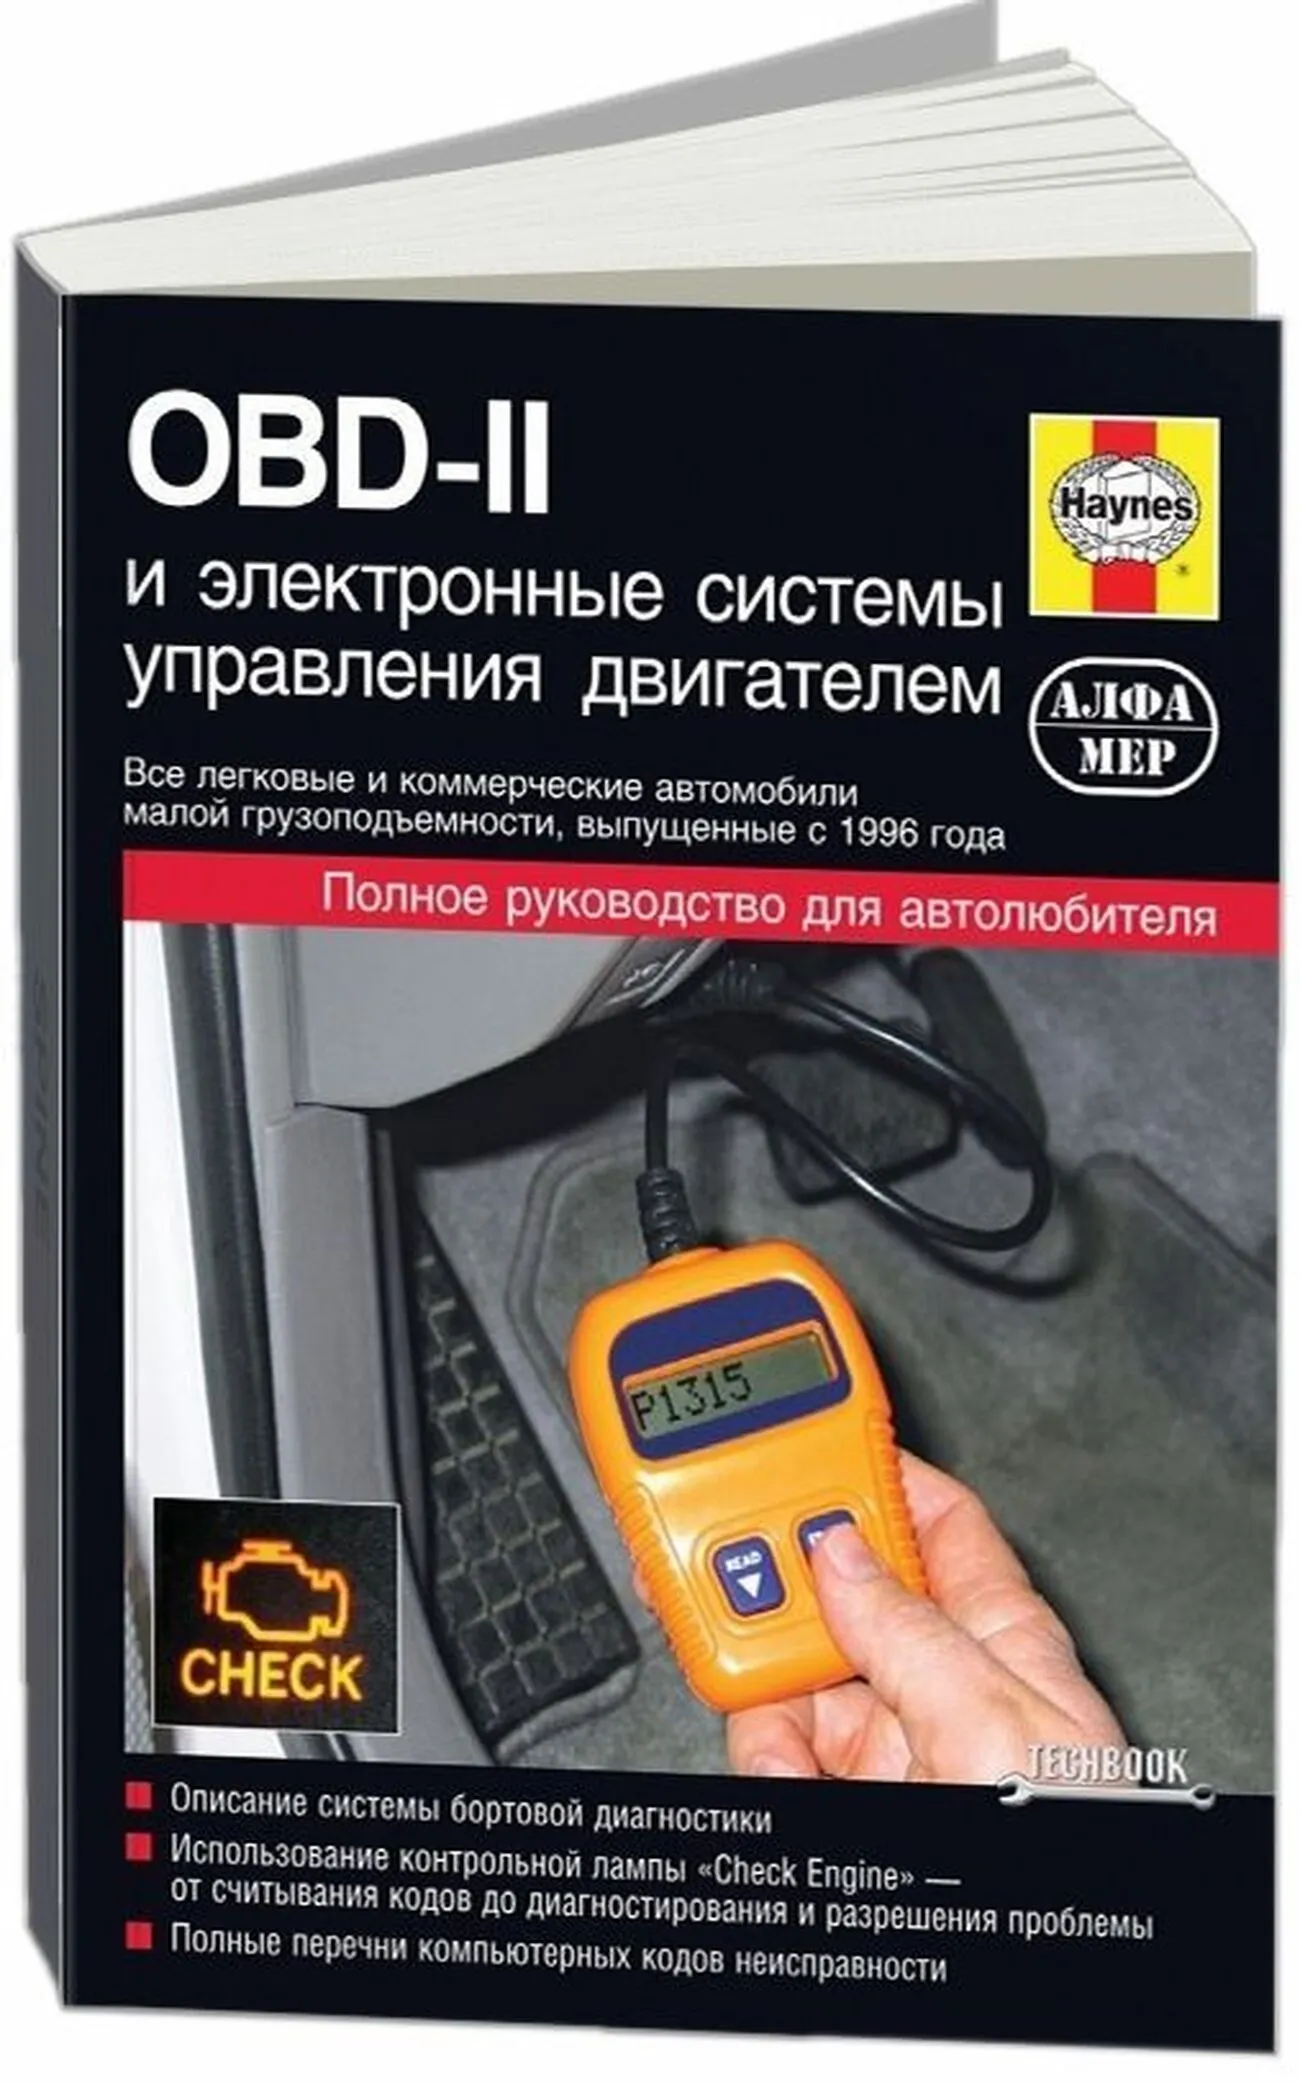 Книга: OBD-II (ОБД 2) и электронные системы управления двигателем | Алфамер Паблишинг